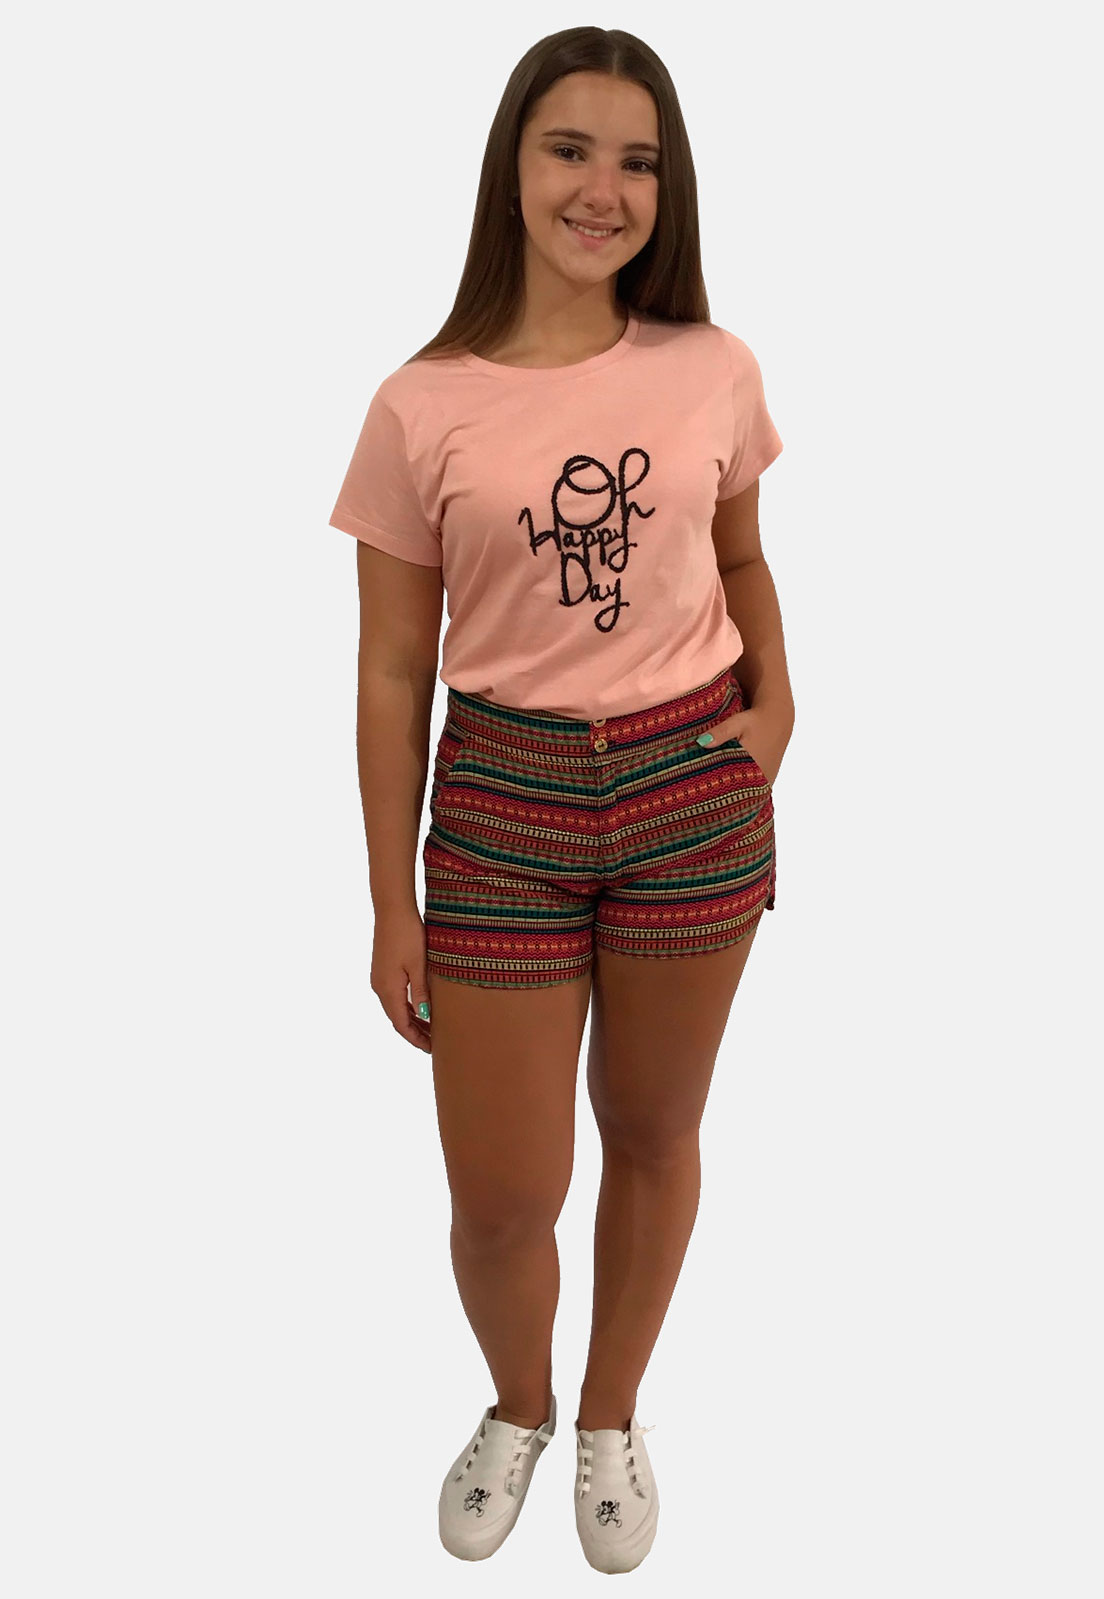 T-Shirt Camiseta Feminina "Oh Happy Day"